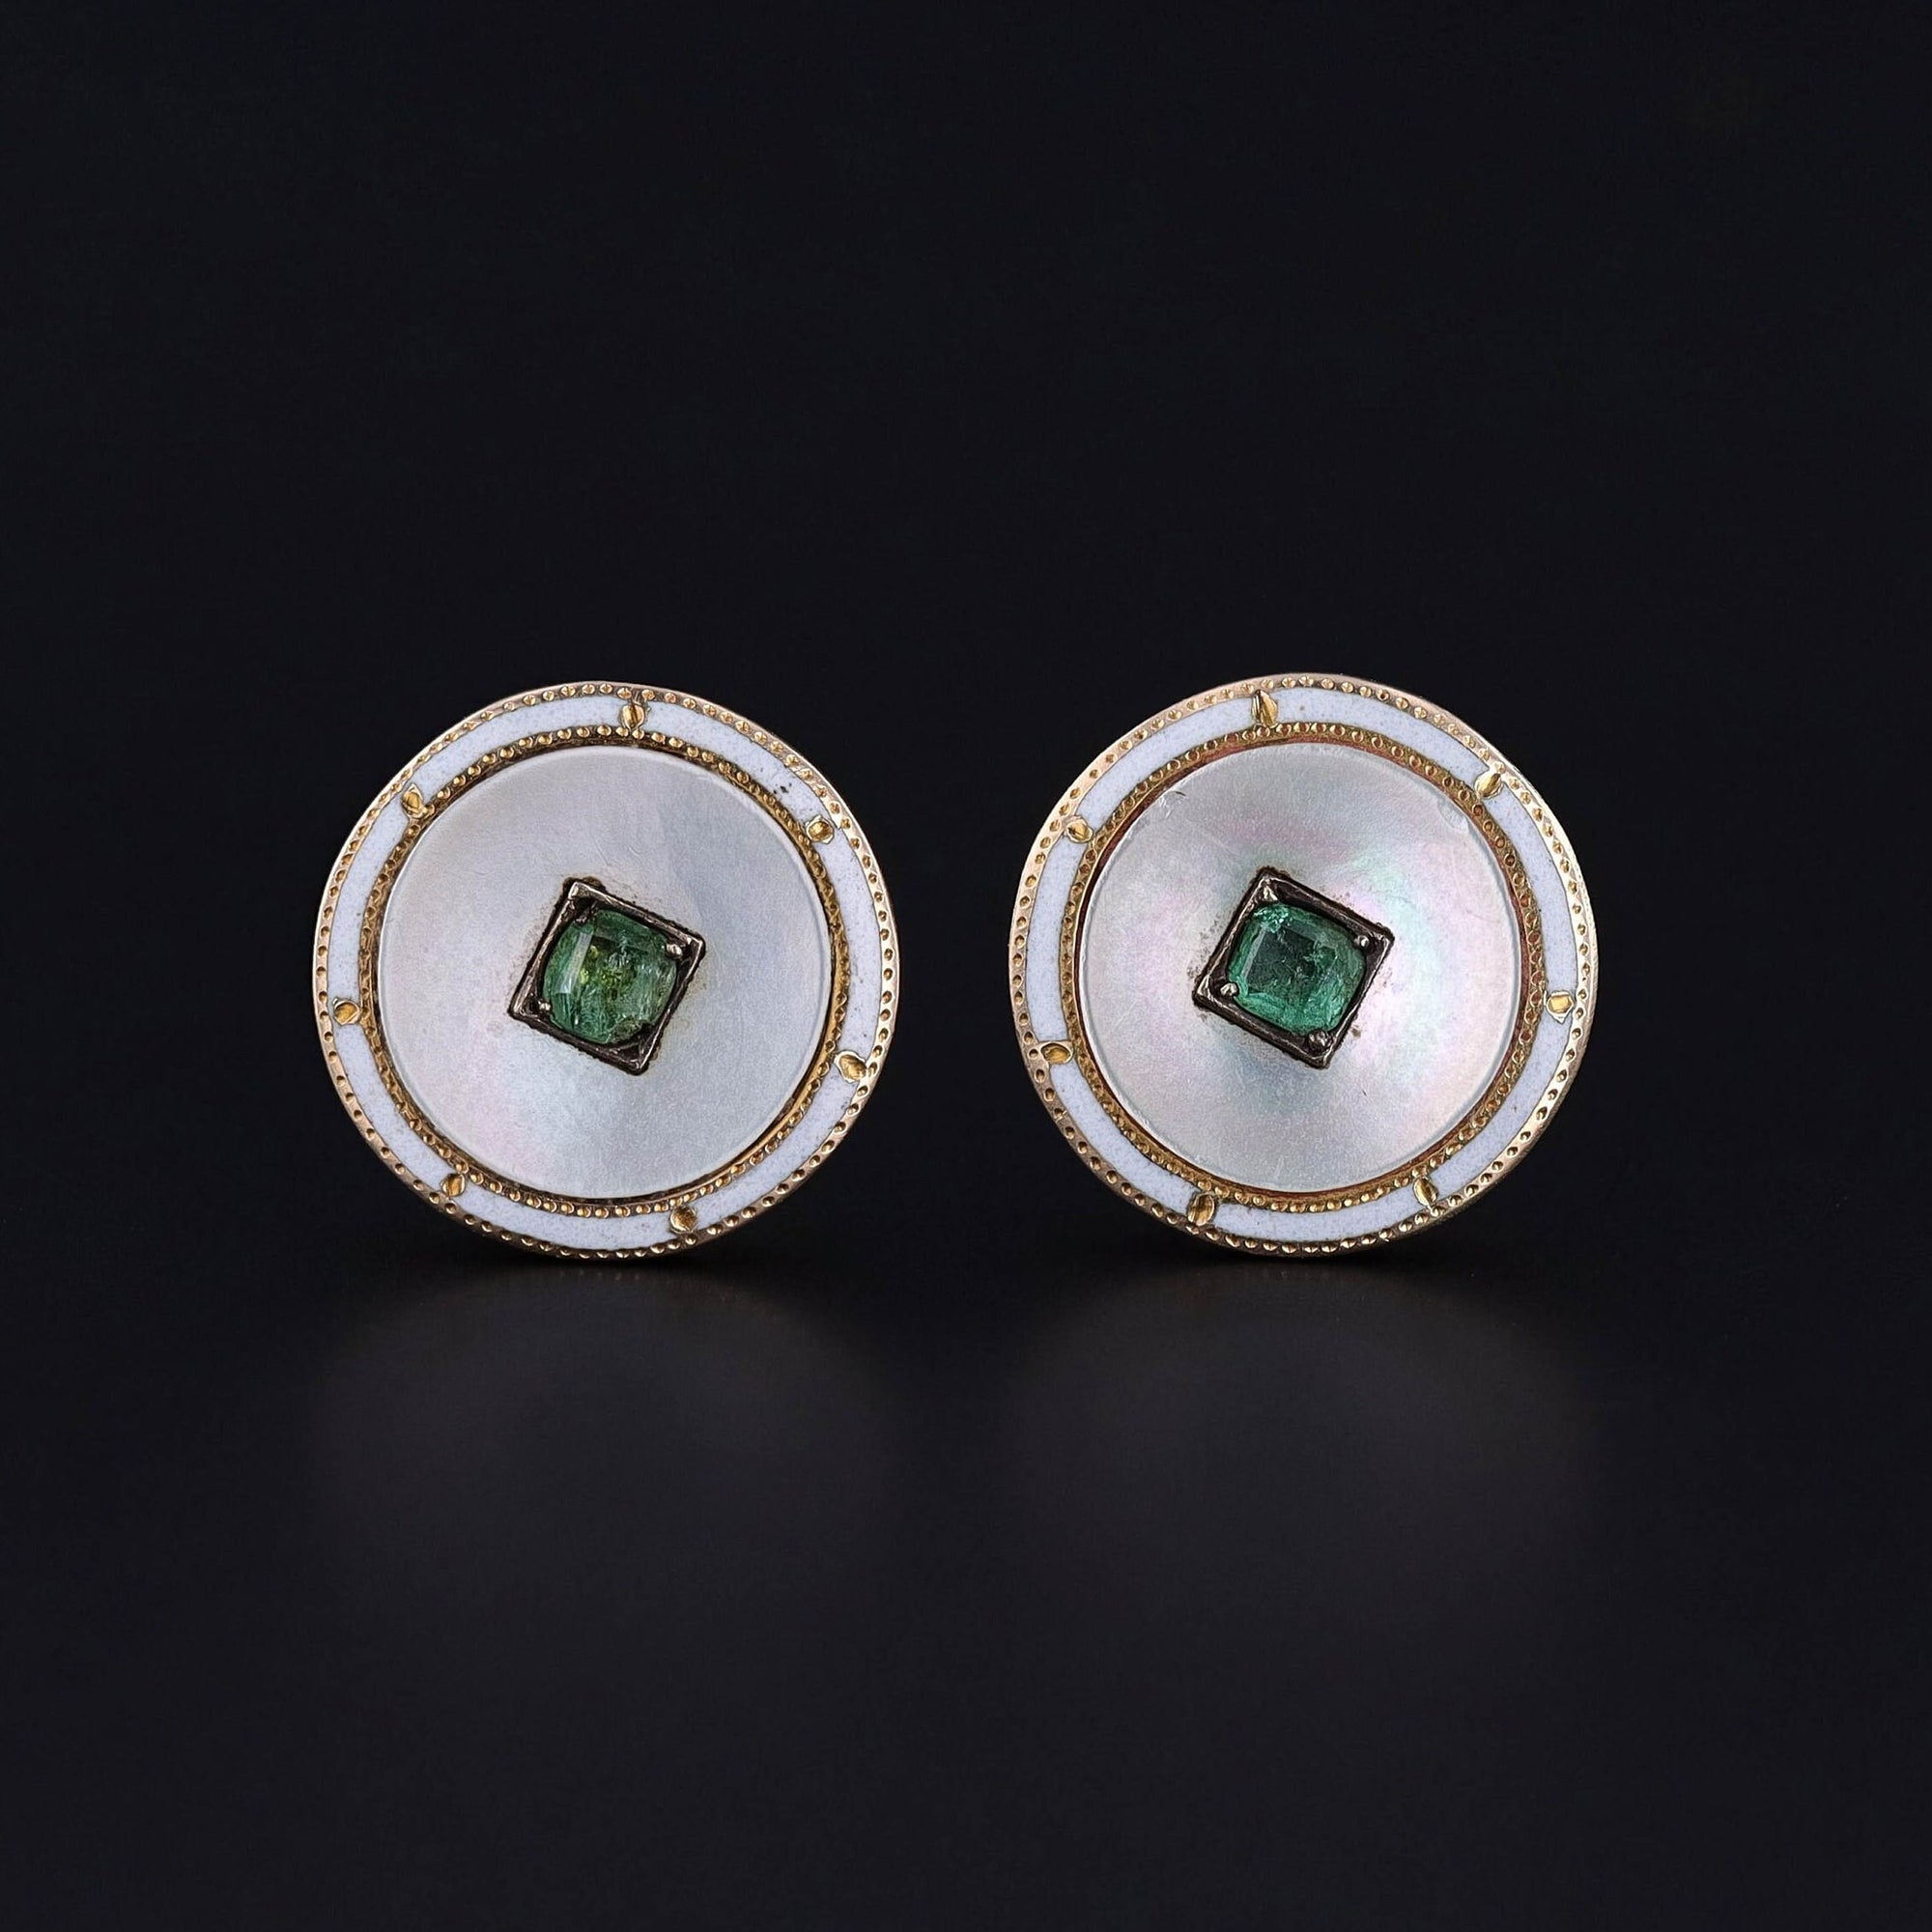 Antique Mother of Pearl, Emerald, & Enamel Earrings